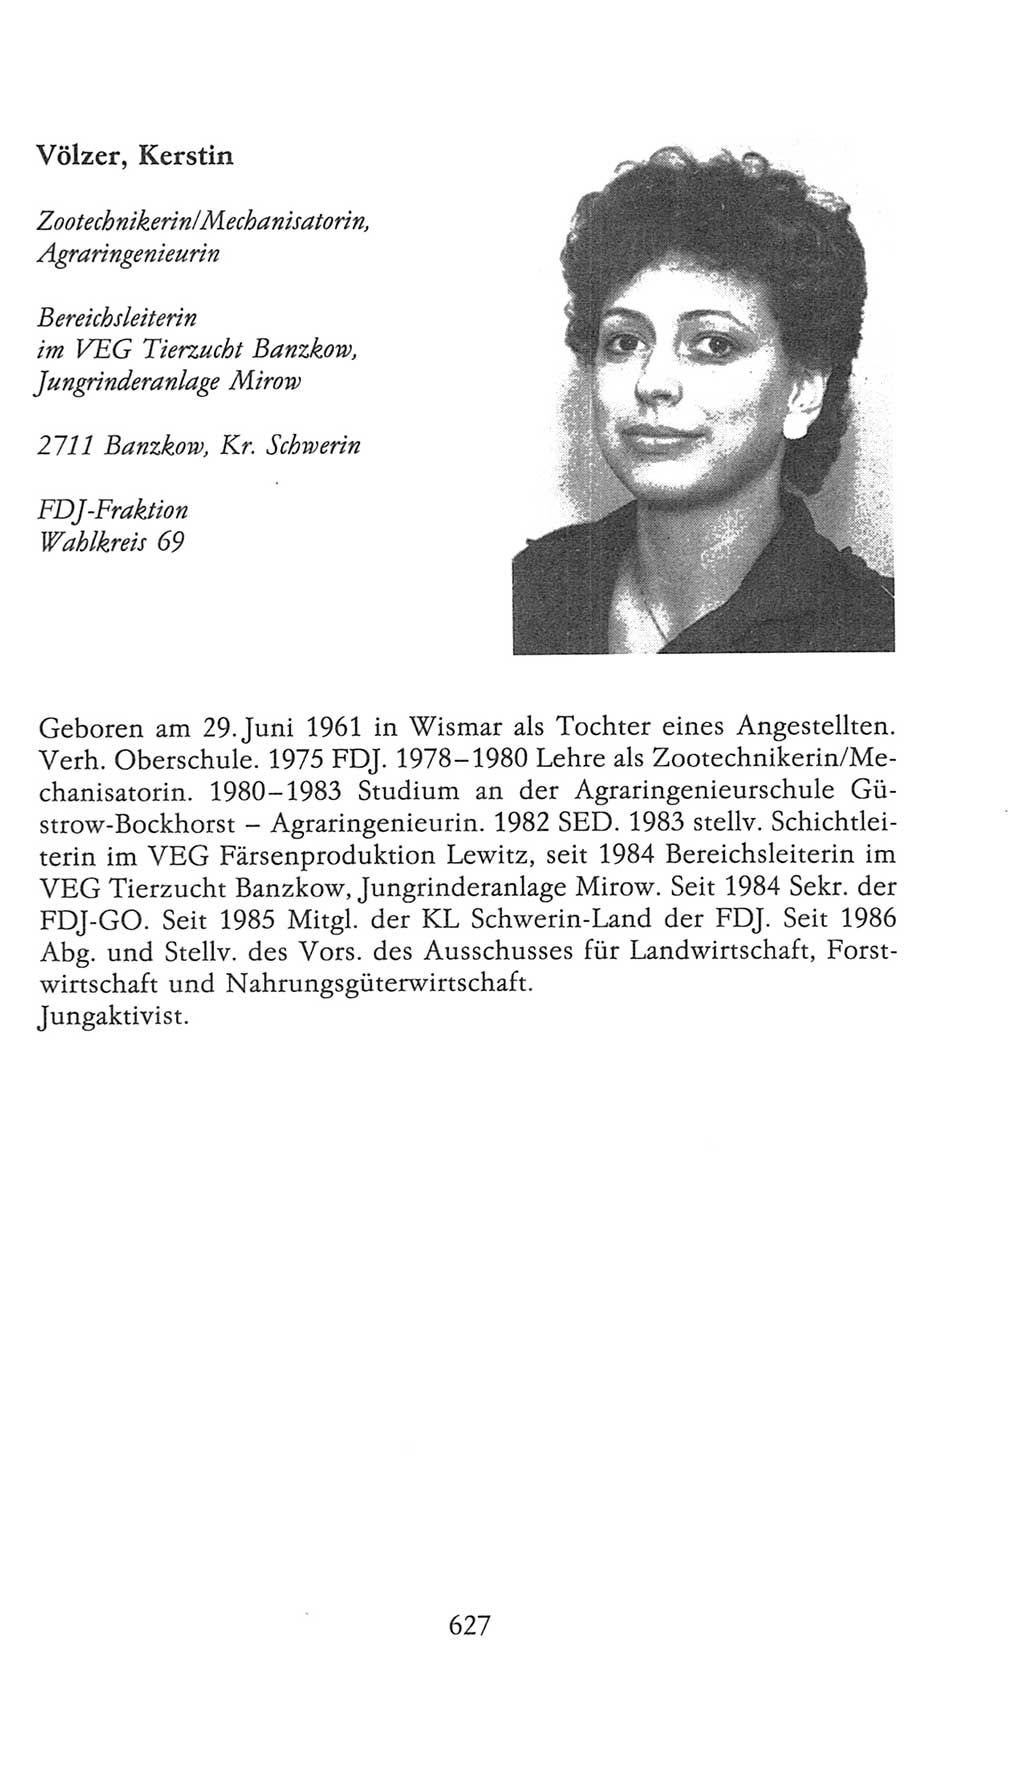 Volkskammer (VK) der Deutschen Demokratischen Republik (DDR), 9. Wahlperiode 1986-1990, Seite 627 (VK. DDR 9. WP. 1986-1990, S. 627)